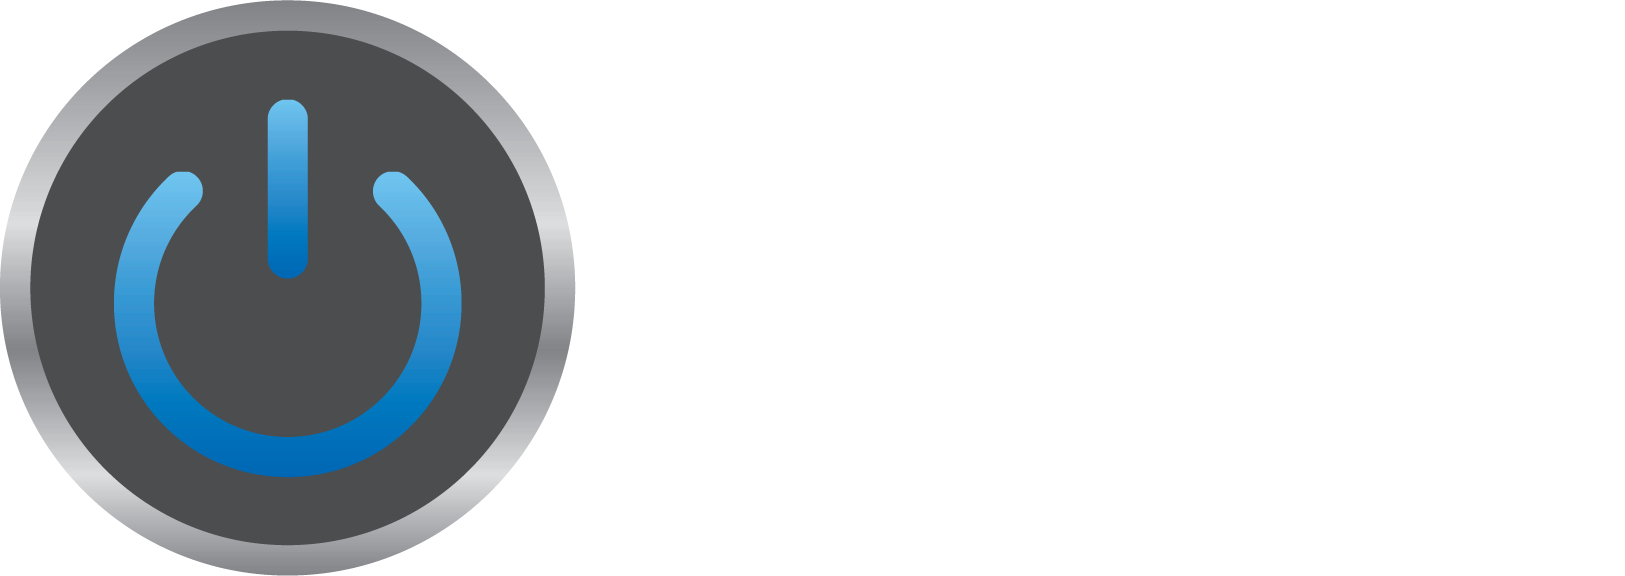 Merkert Tech Logo - Laptop (1625x576)